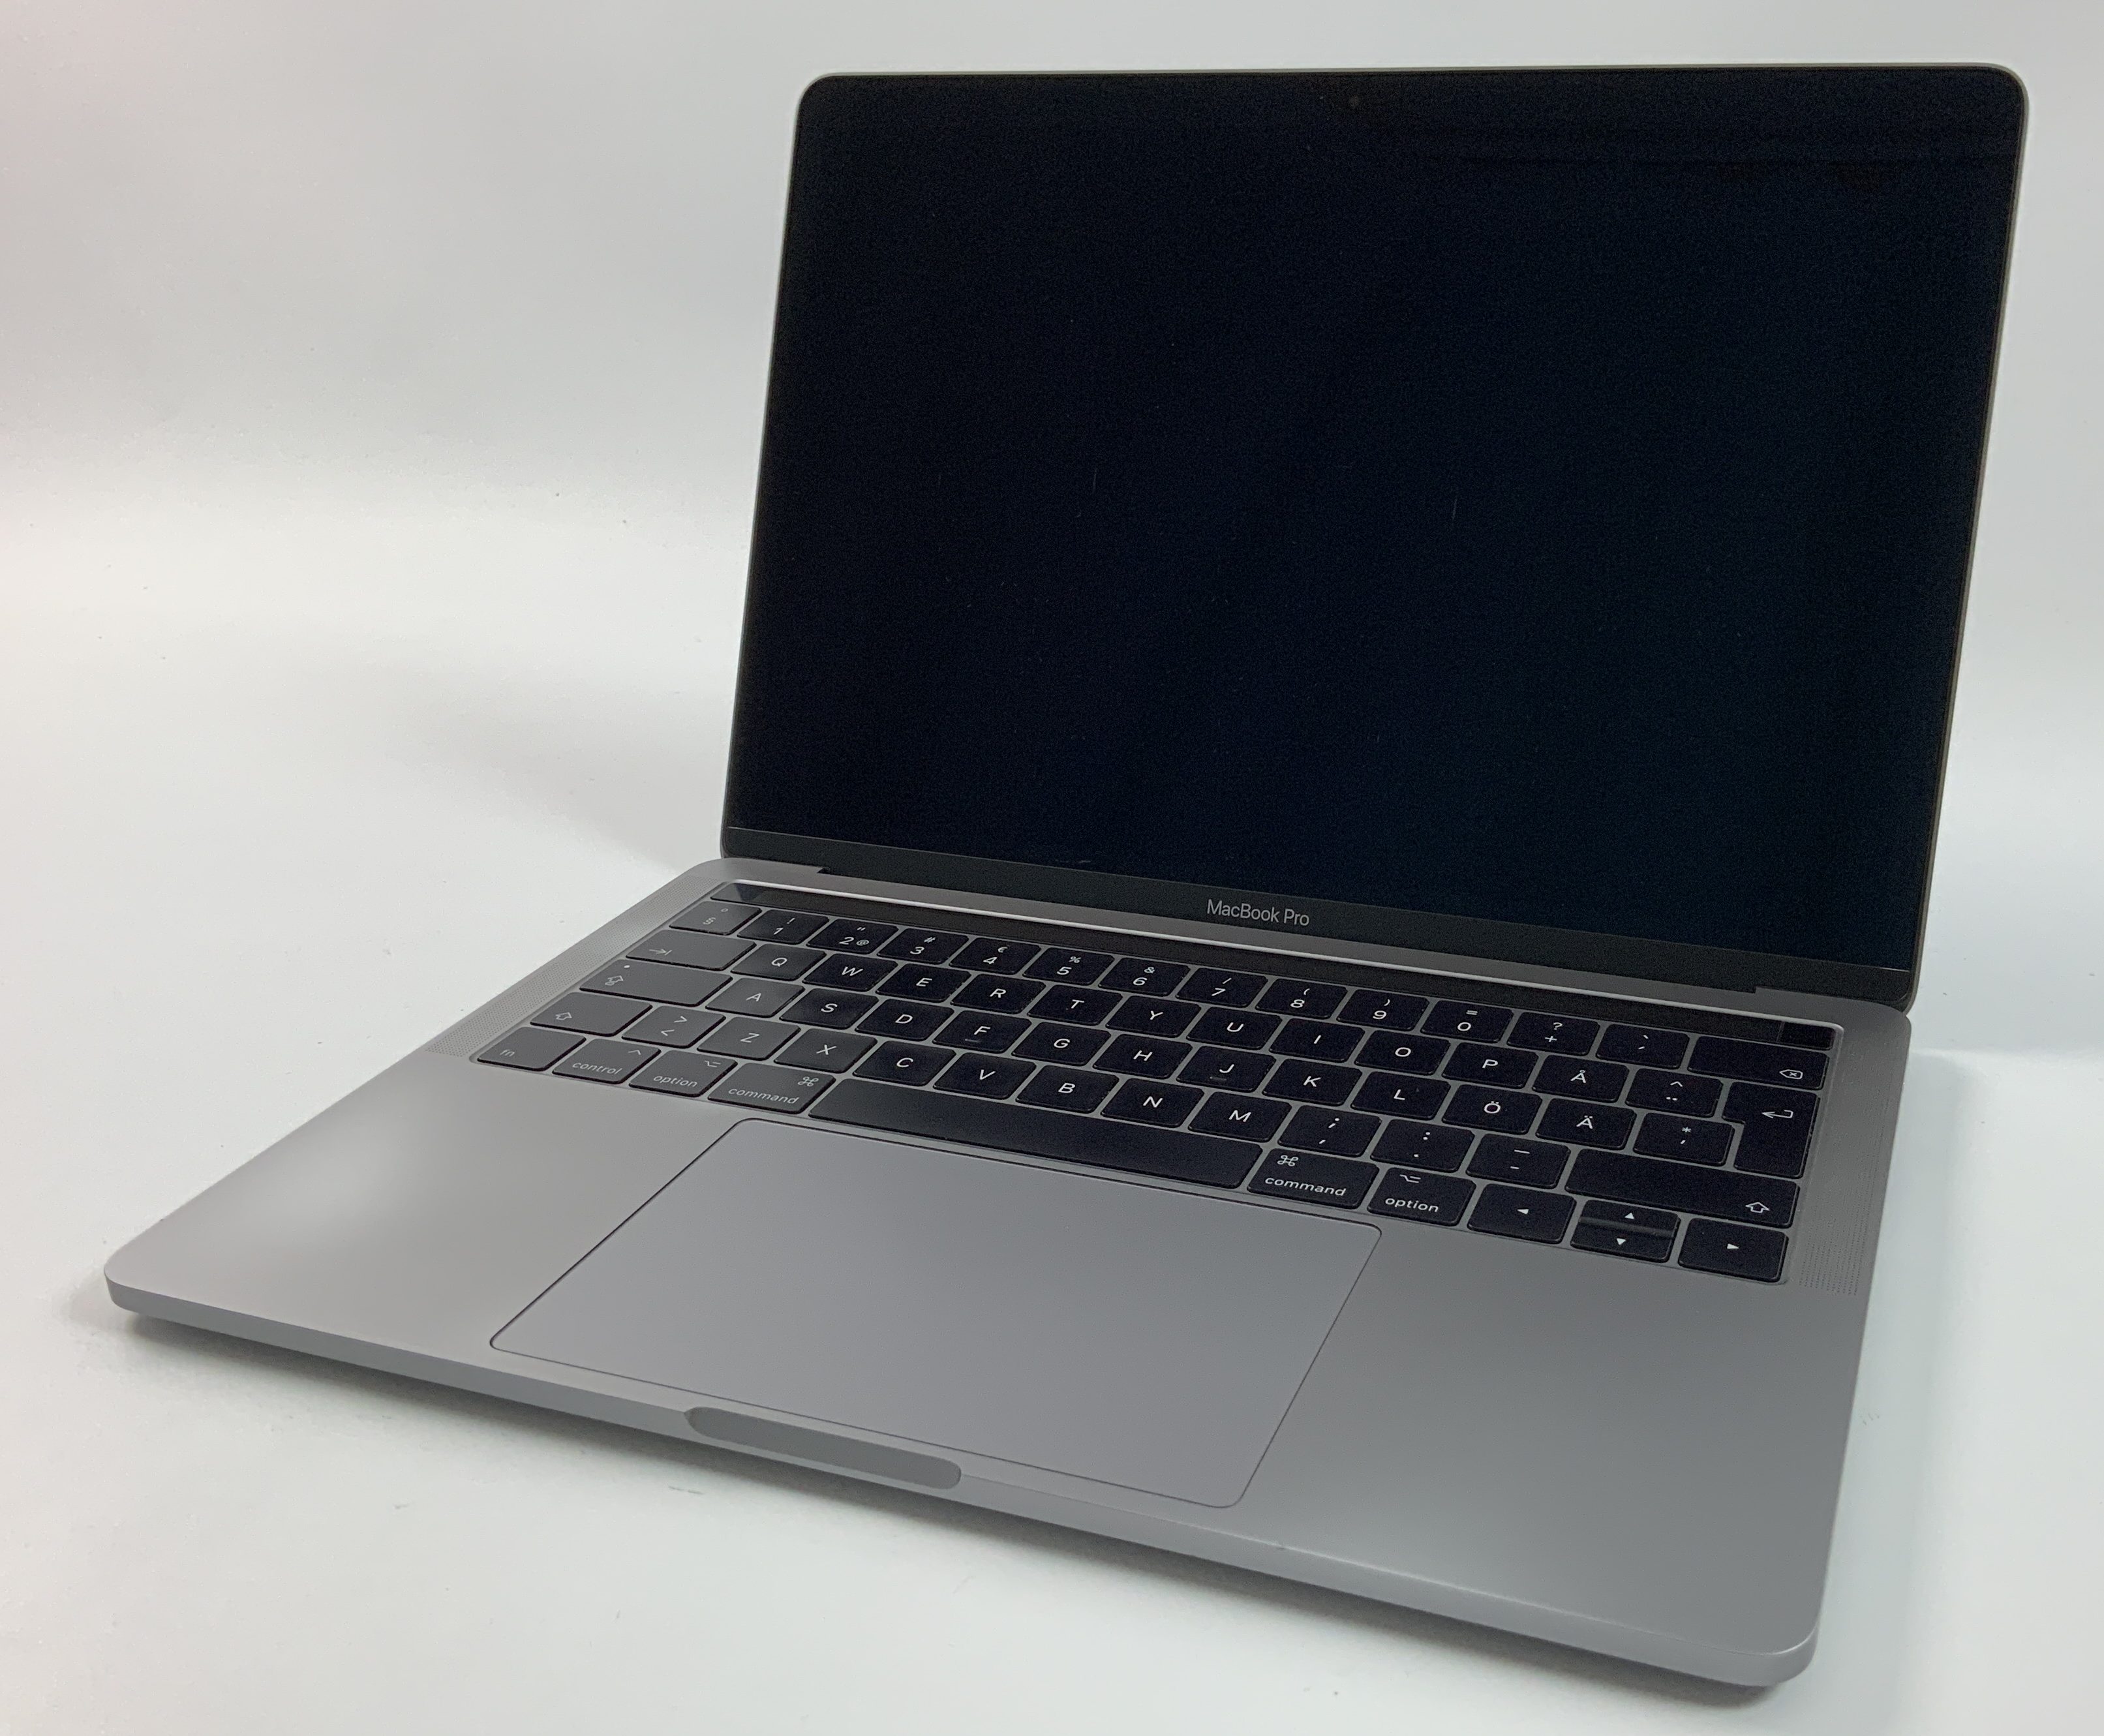 MacBook Pro 13" 4TBT Mid 2017 (Intel Core i5 3.1 GHz 16 GB RAM 256 GB SSD), Space Gray, Intel Core i5 3.1 GHz, 16 GB RAM, 256 GB SSD, immagine 1